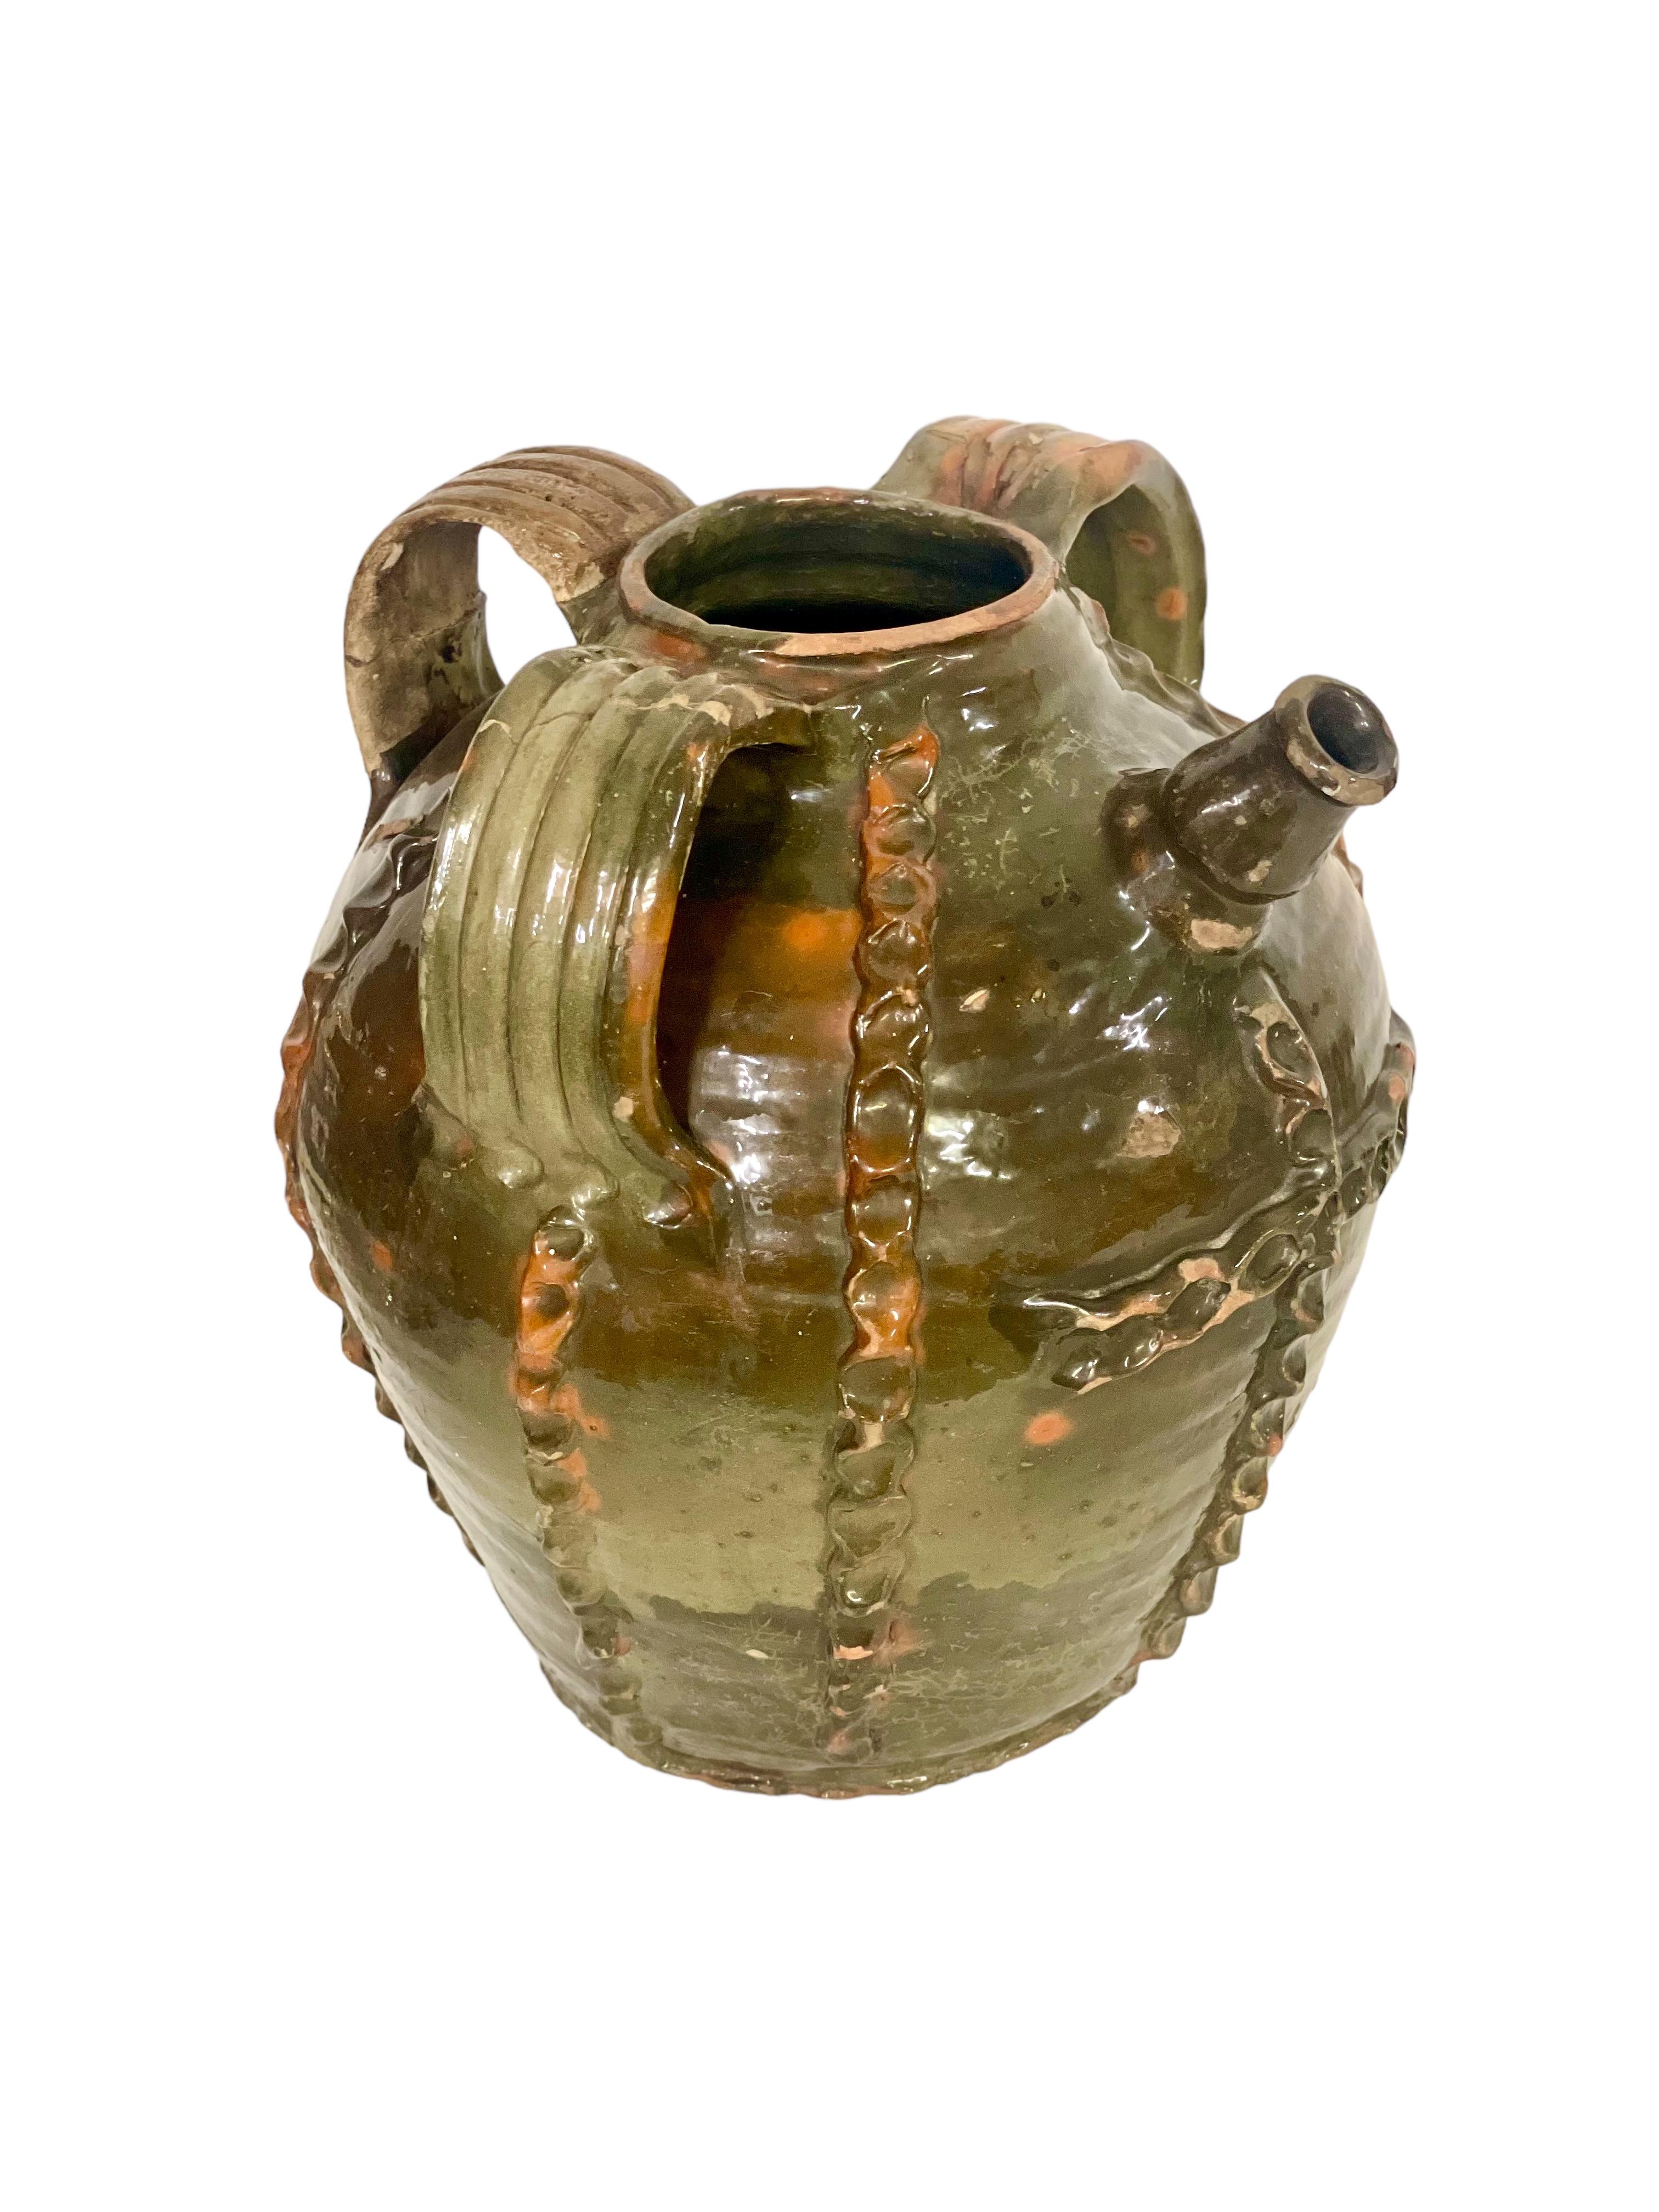 Il s'agit d'un fabuleux exemple de grande jarre à huile en noyer français du XVIIIe siècle, avec trois poignées décoratives et un bec verseur court. Conservant sa glaçure vert foncé d'origine, la jarre est ornée de bandes verticales dans un motif